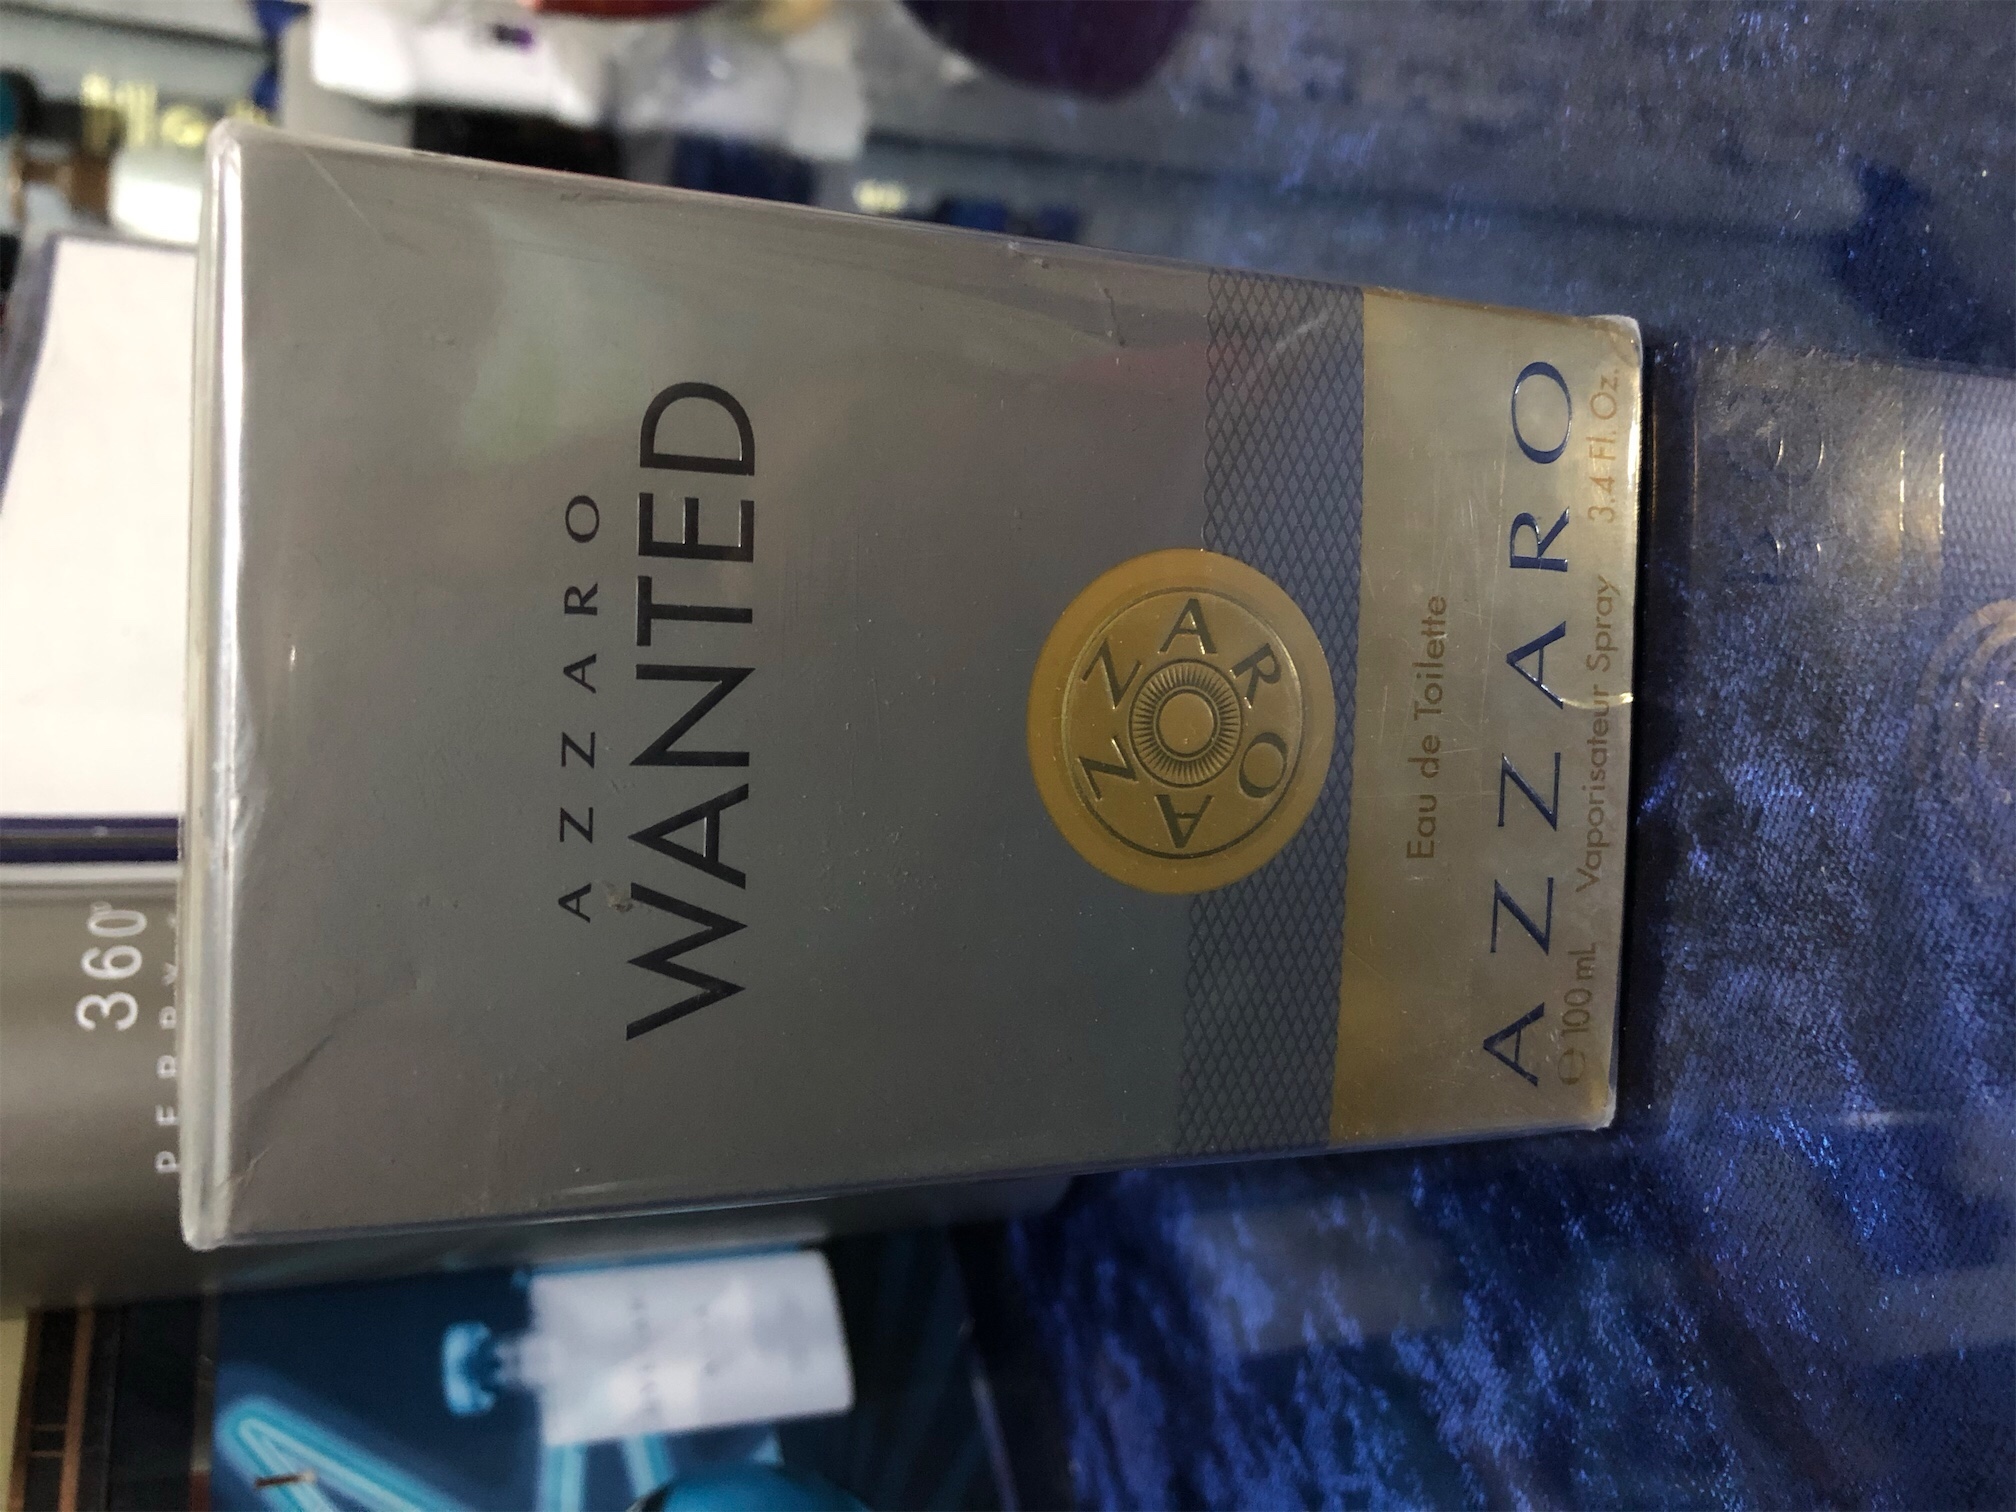 salud y belleza - Perfume azzaro wanted